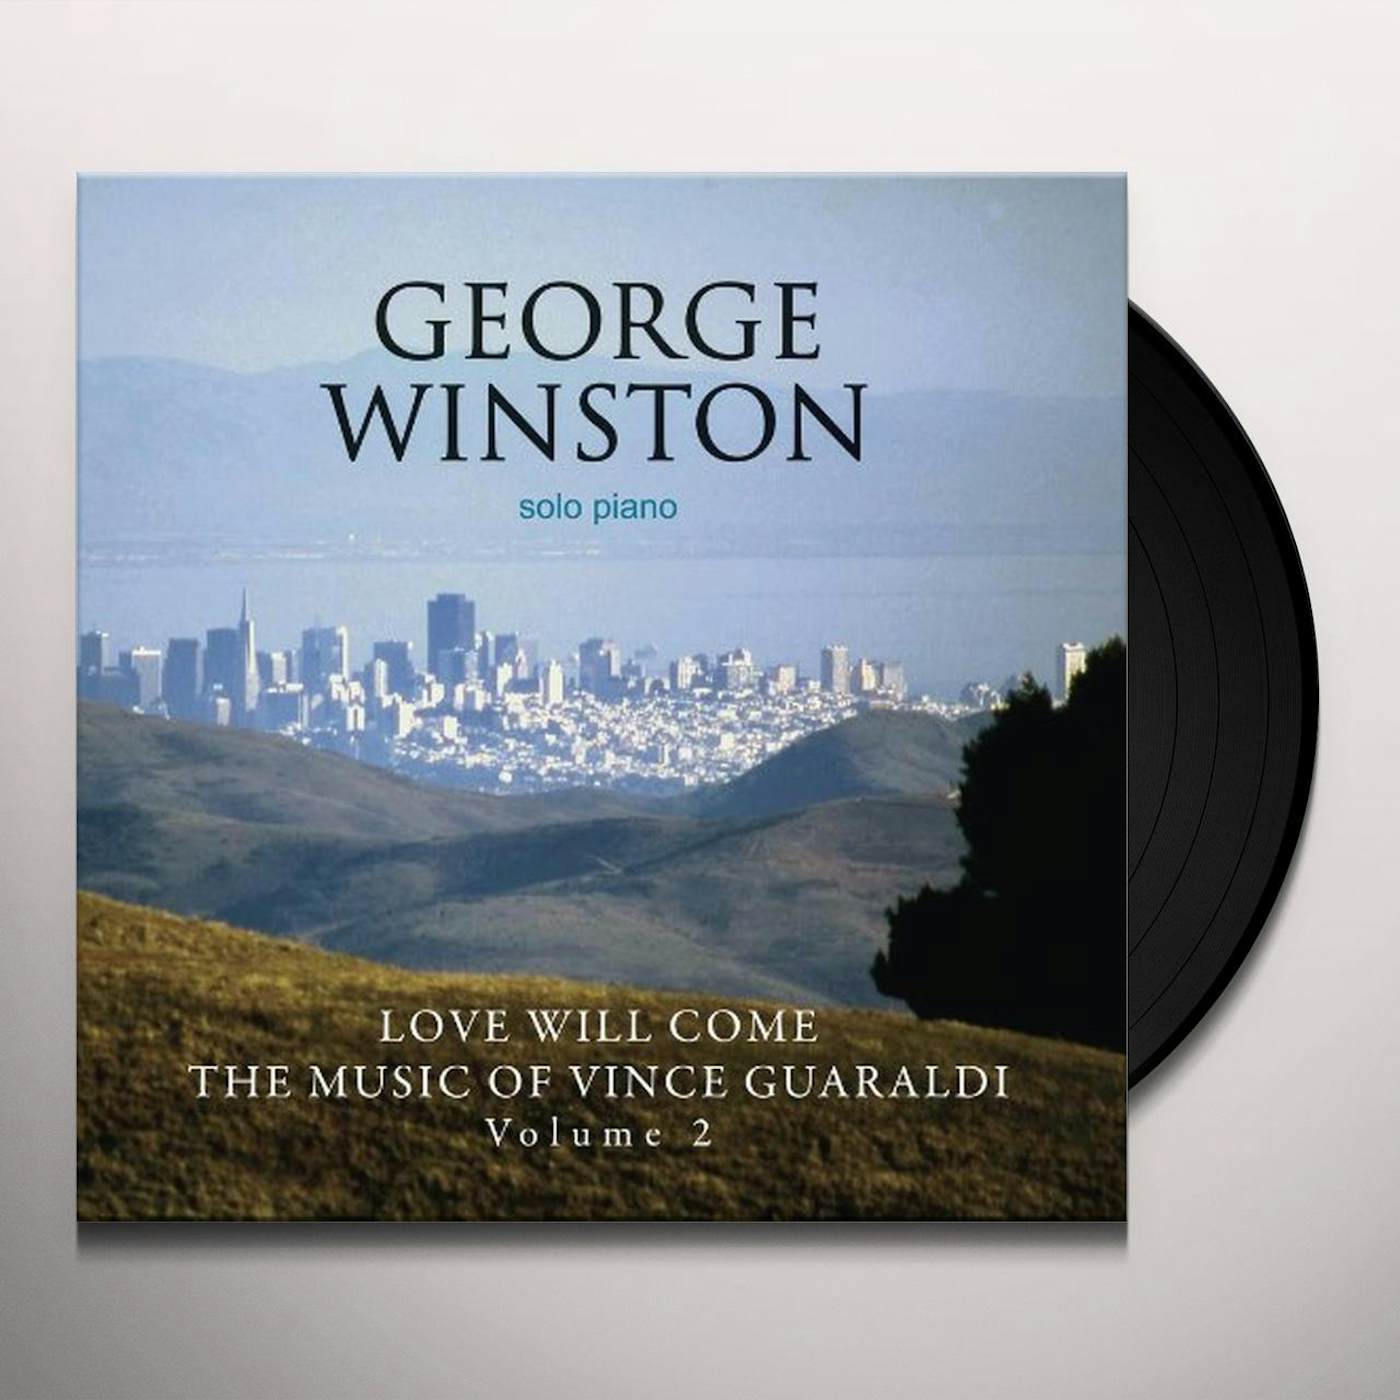 George Winston LOVE WILL COME: THE MUSIC OF VINCE GUARALDI 2 Vinyl Record